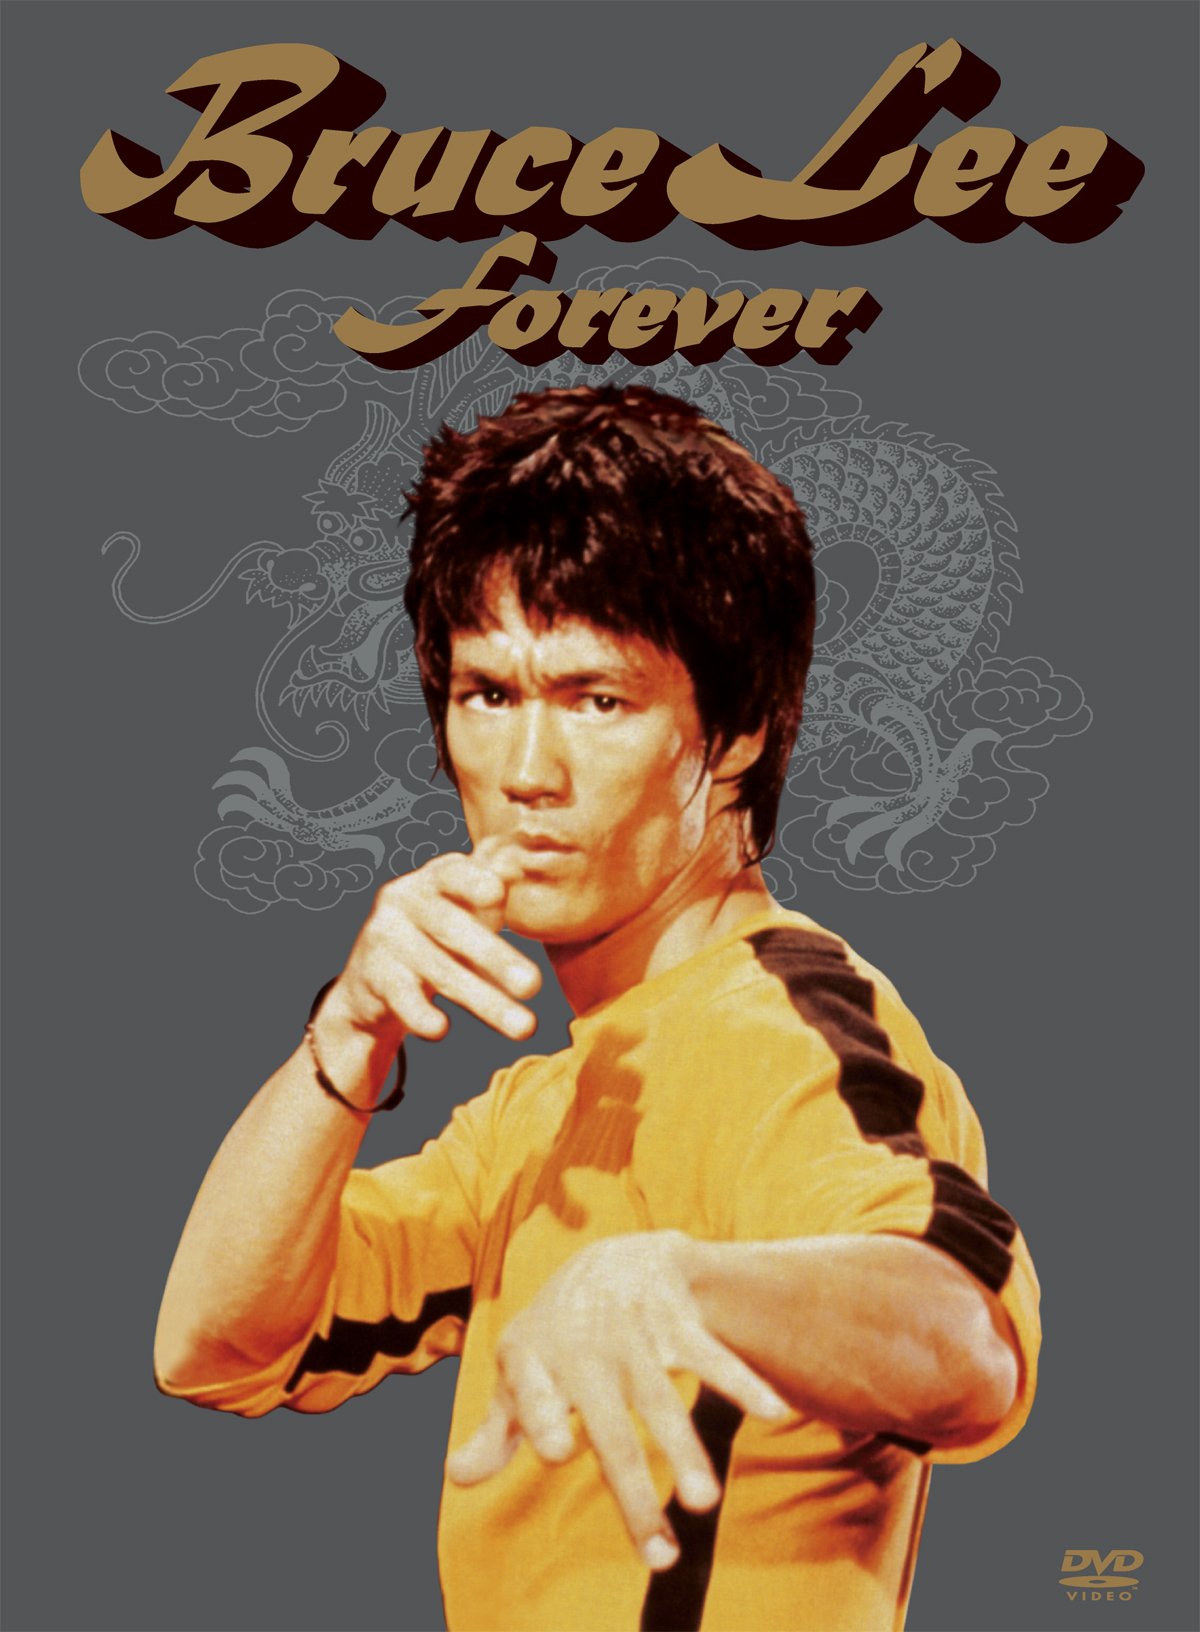 Bruce Lee “Forever” DVD